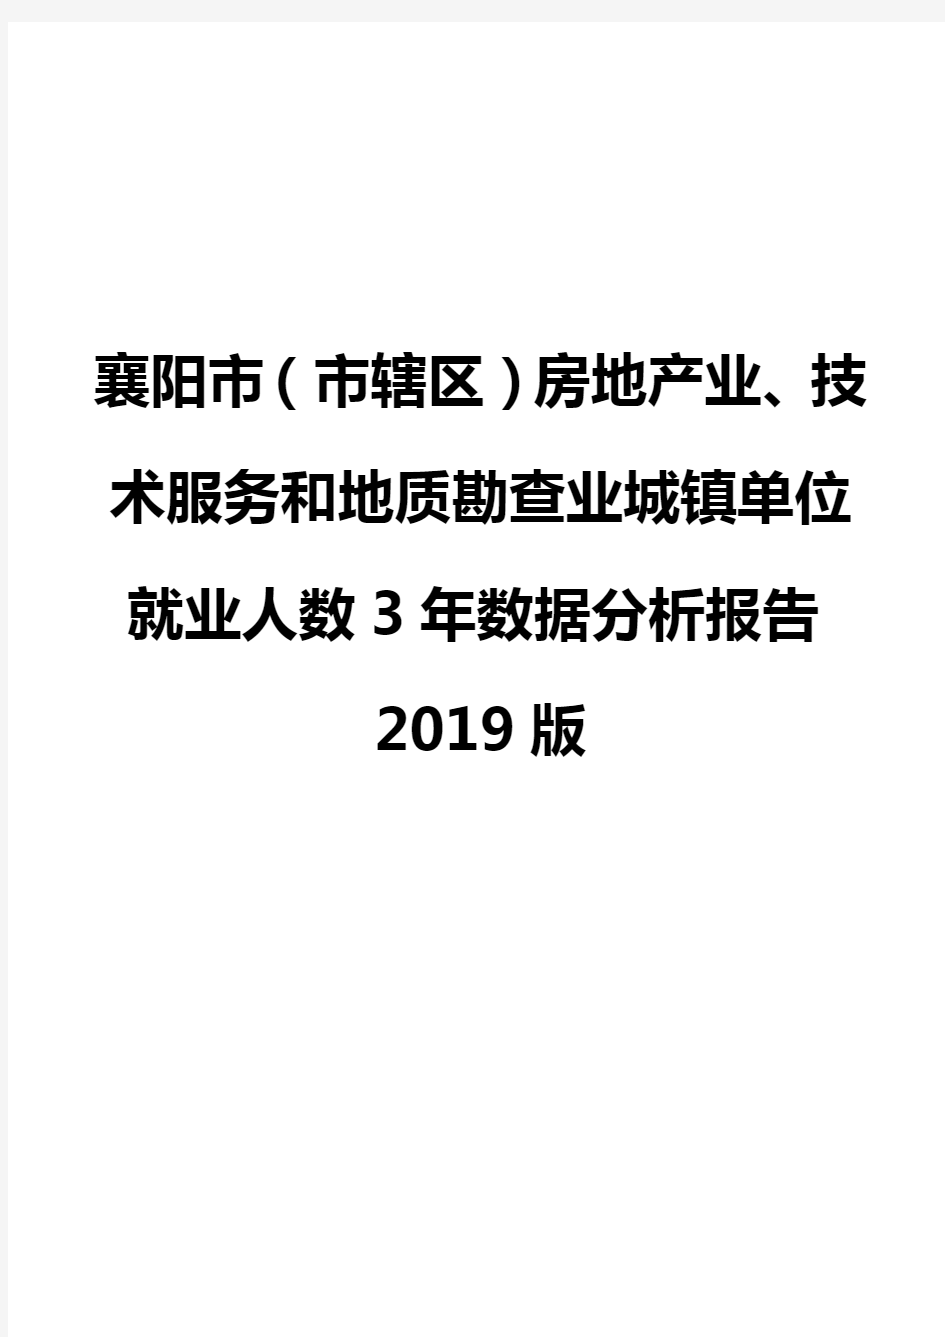 襄阳市(市辖区)房地产业、技术服务和地质勘查业城镇单位就业人数3年数据分析报告2019版